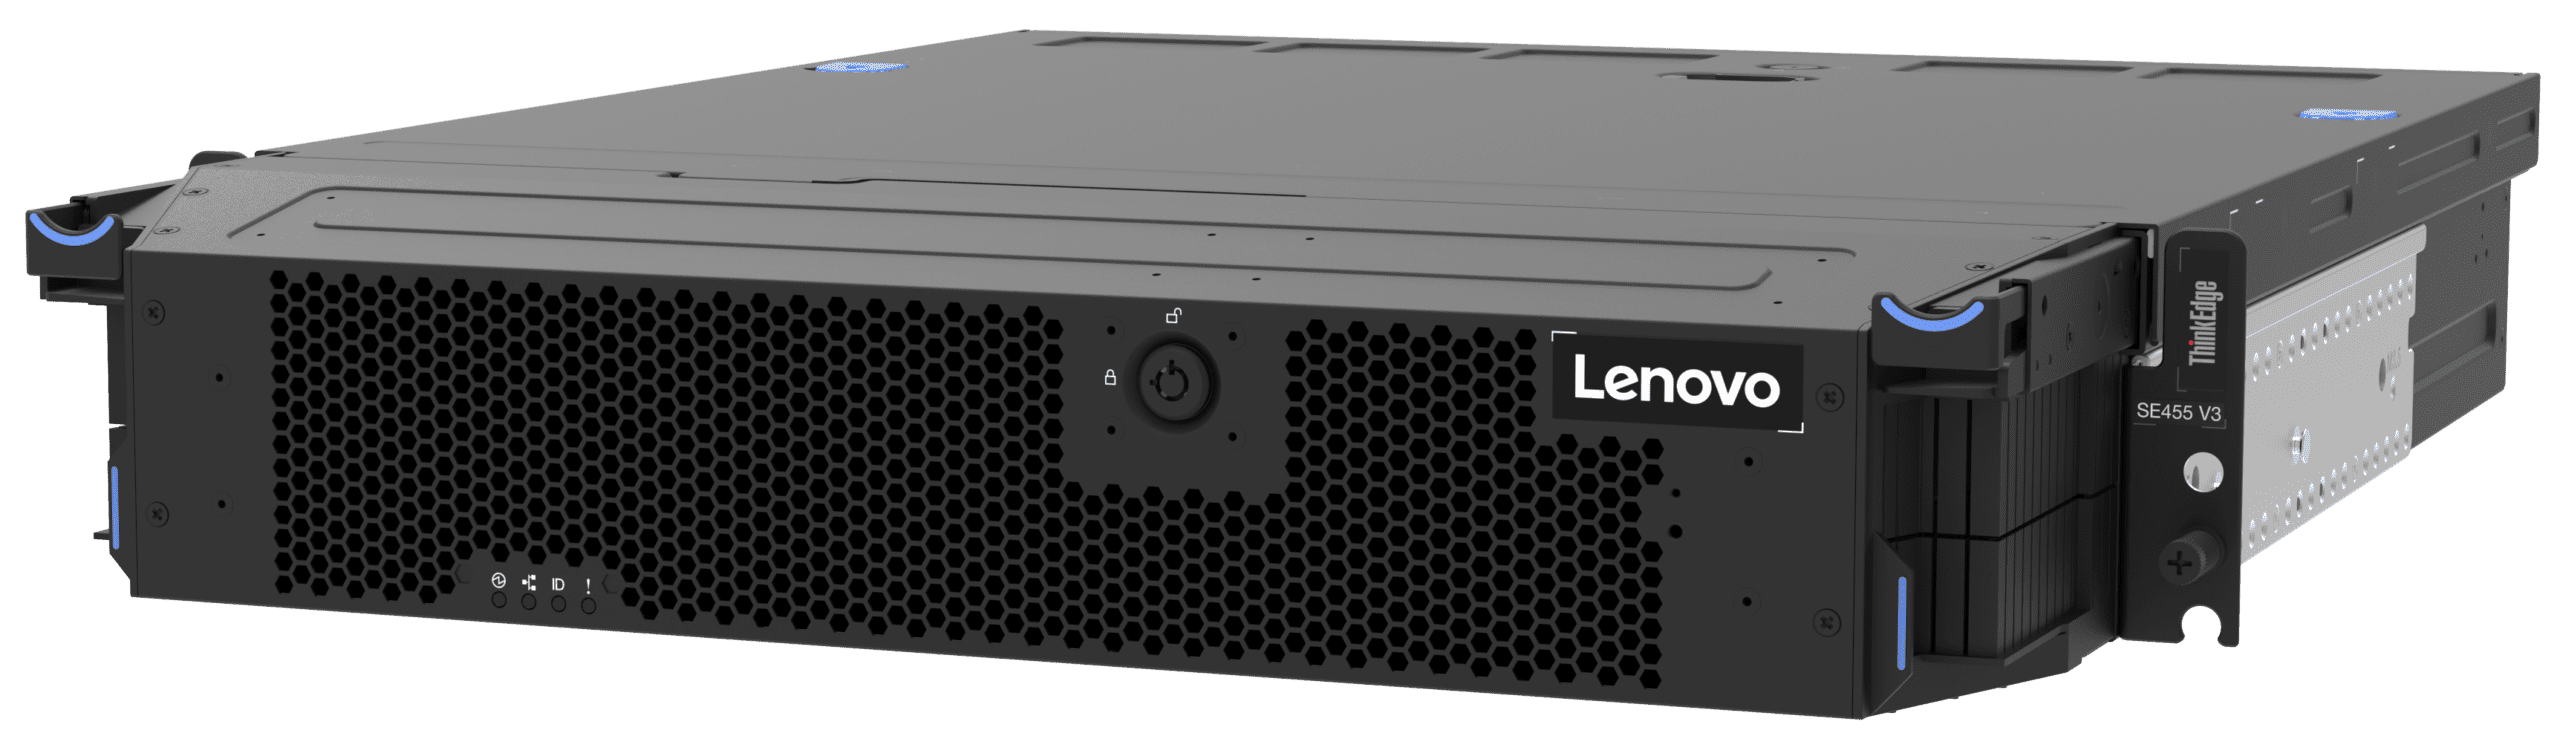 New Lenovo Server Permits AI to Run Locally | Healthcare IT Today